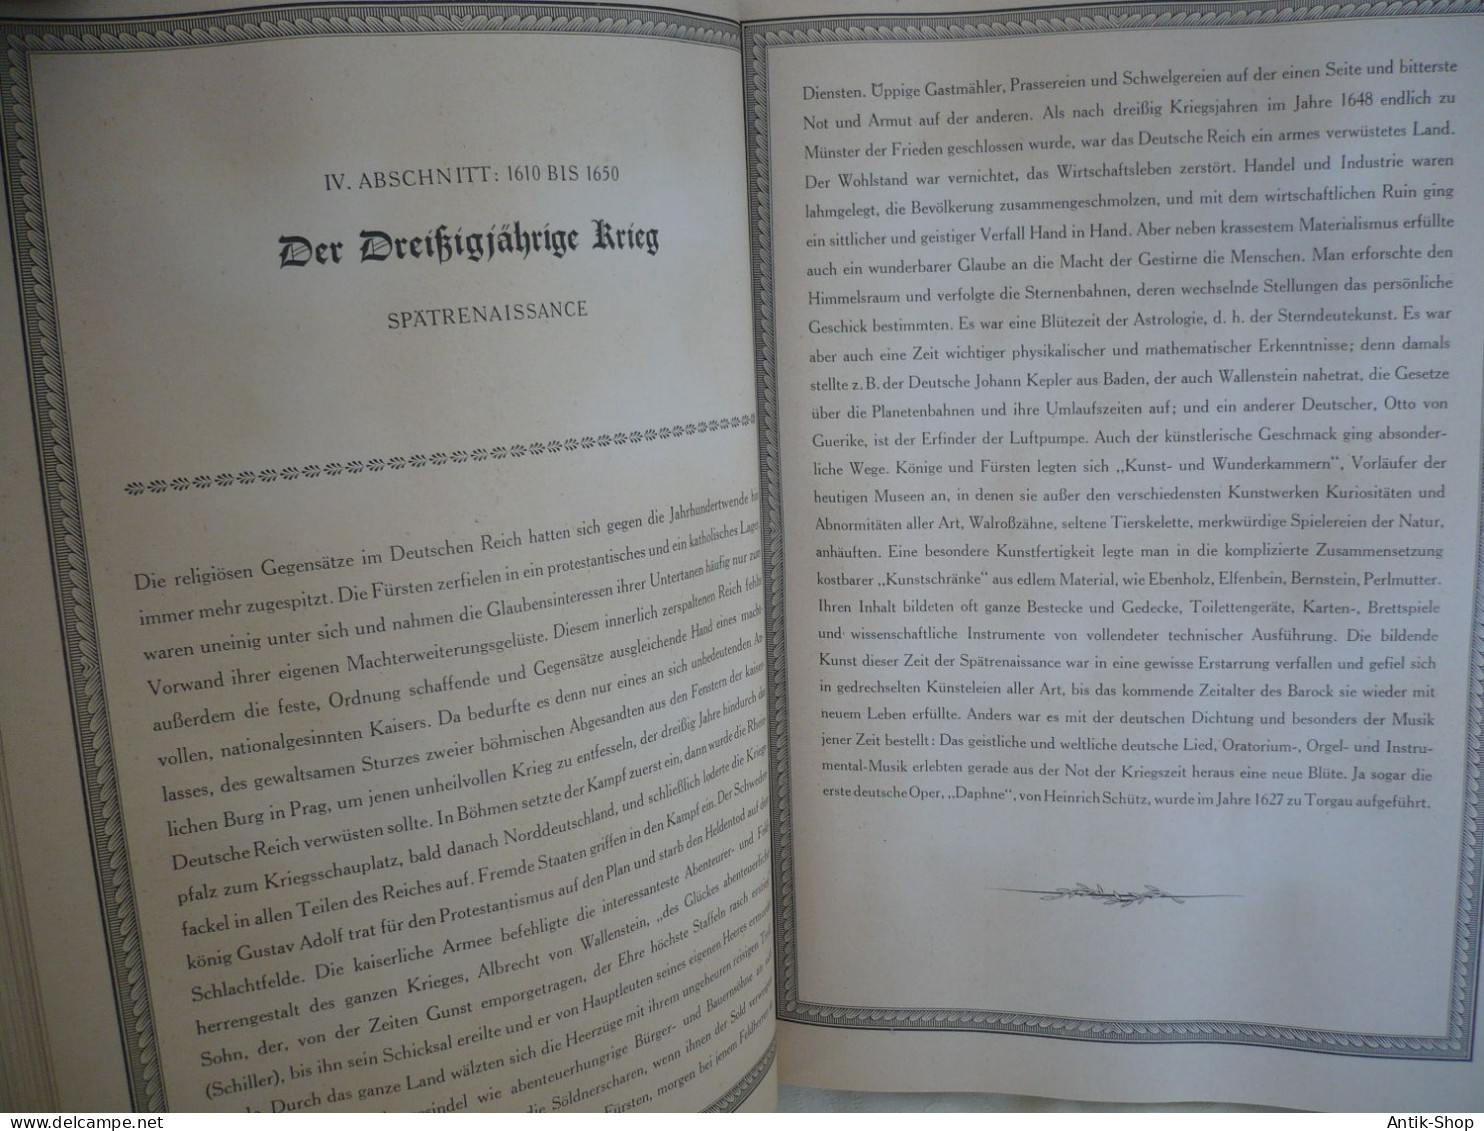 Sammelalbum "Deutsche Kulturbider" von 1934 in Schutzkarton - komplett (1120)